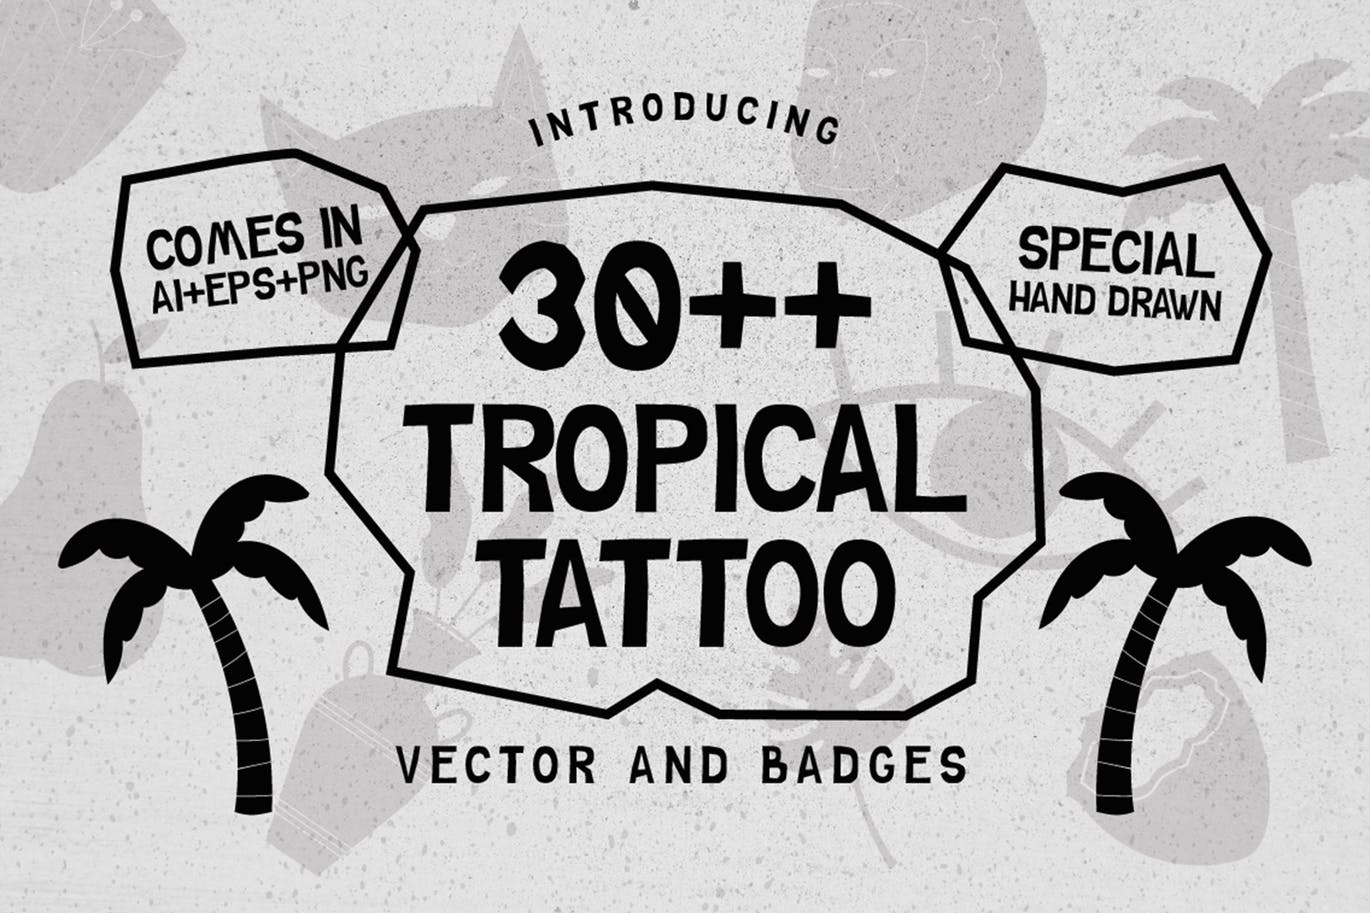 30+热带主题纹身/徽章矢量图形图案素材 30++ TROPICAL TATTOO VECTOR & BADGES插图